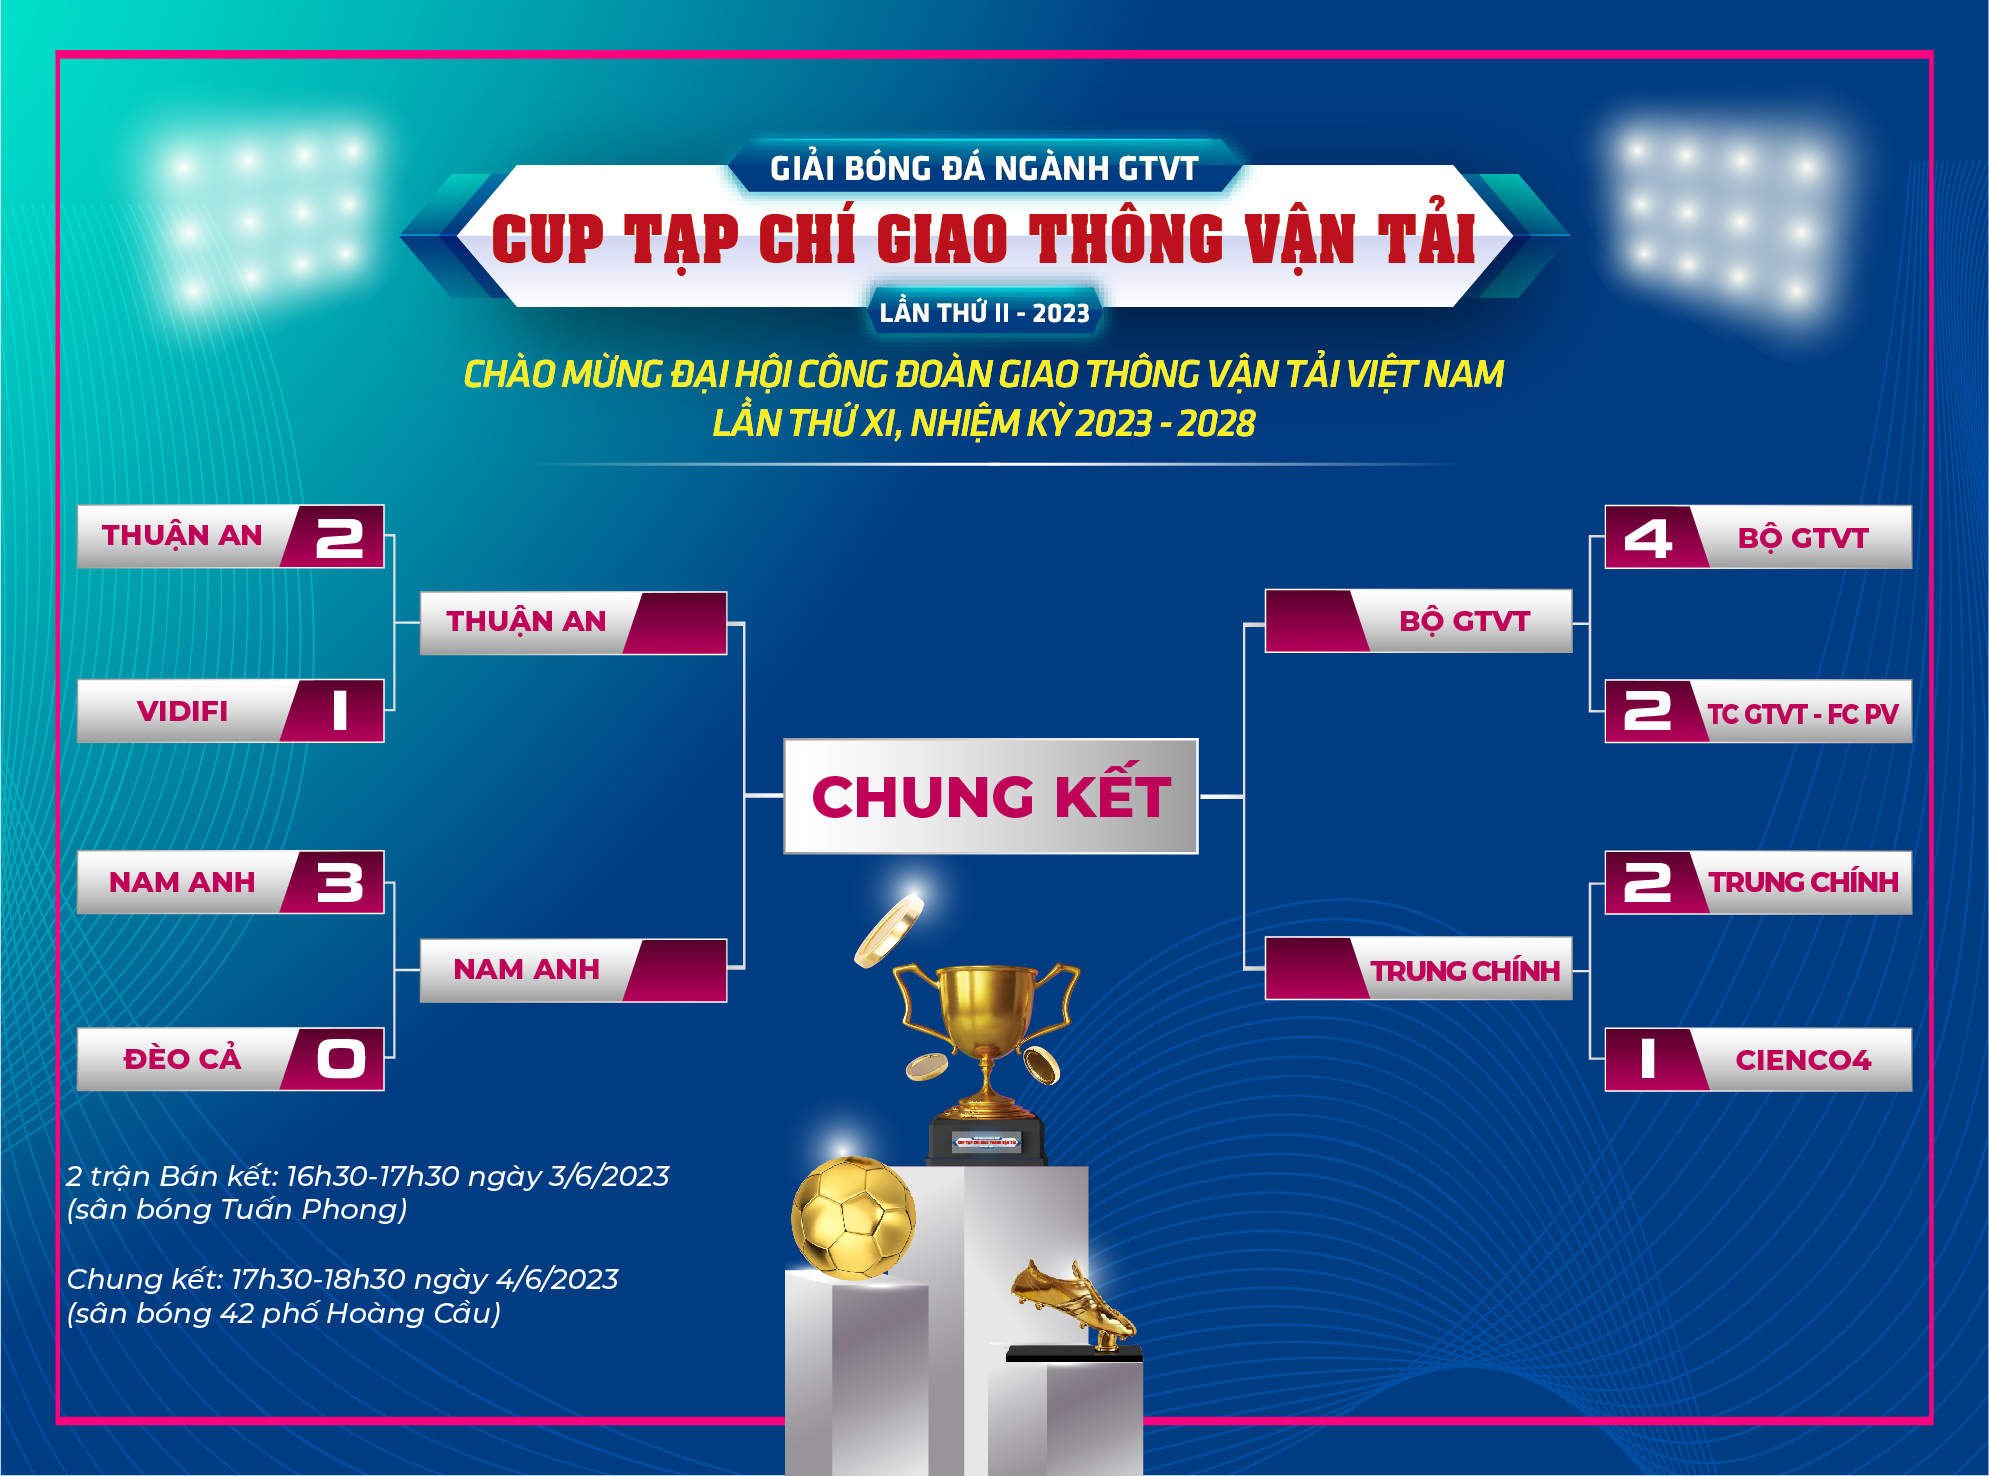 Định danh 4 đội thắng knockout Giải bóng đá ngành GTVT tranh Cup Tạp chí GTVT năm 2023 - Ảnh 6.